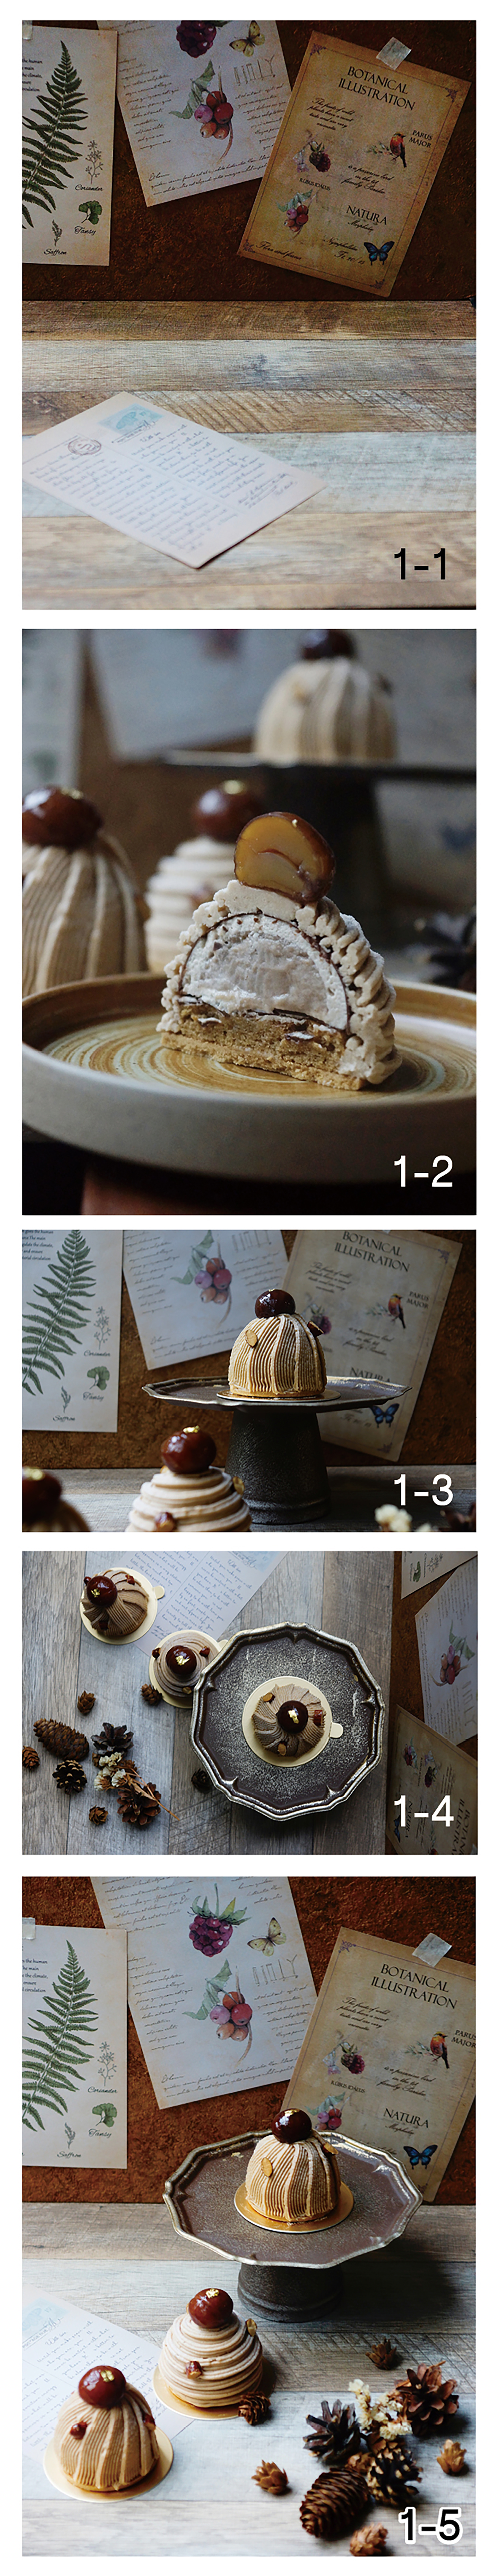 1-1：深／淺褐色背板、仿舊復古紙張、鐵製甜點架等。1-2、1-3、1-4：各種角度拍攝。1-5：最佳照片決定。